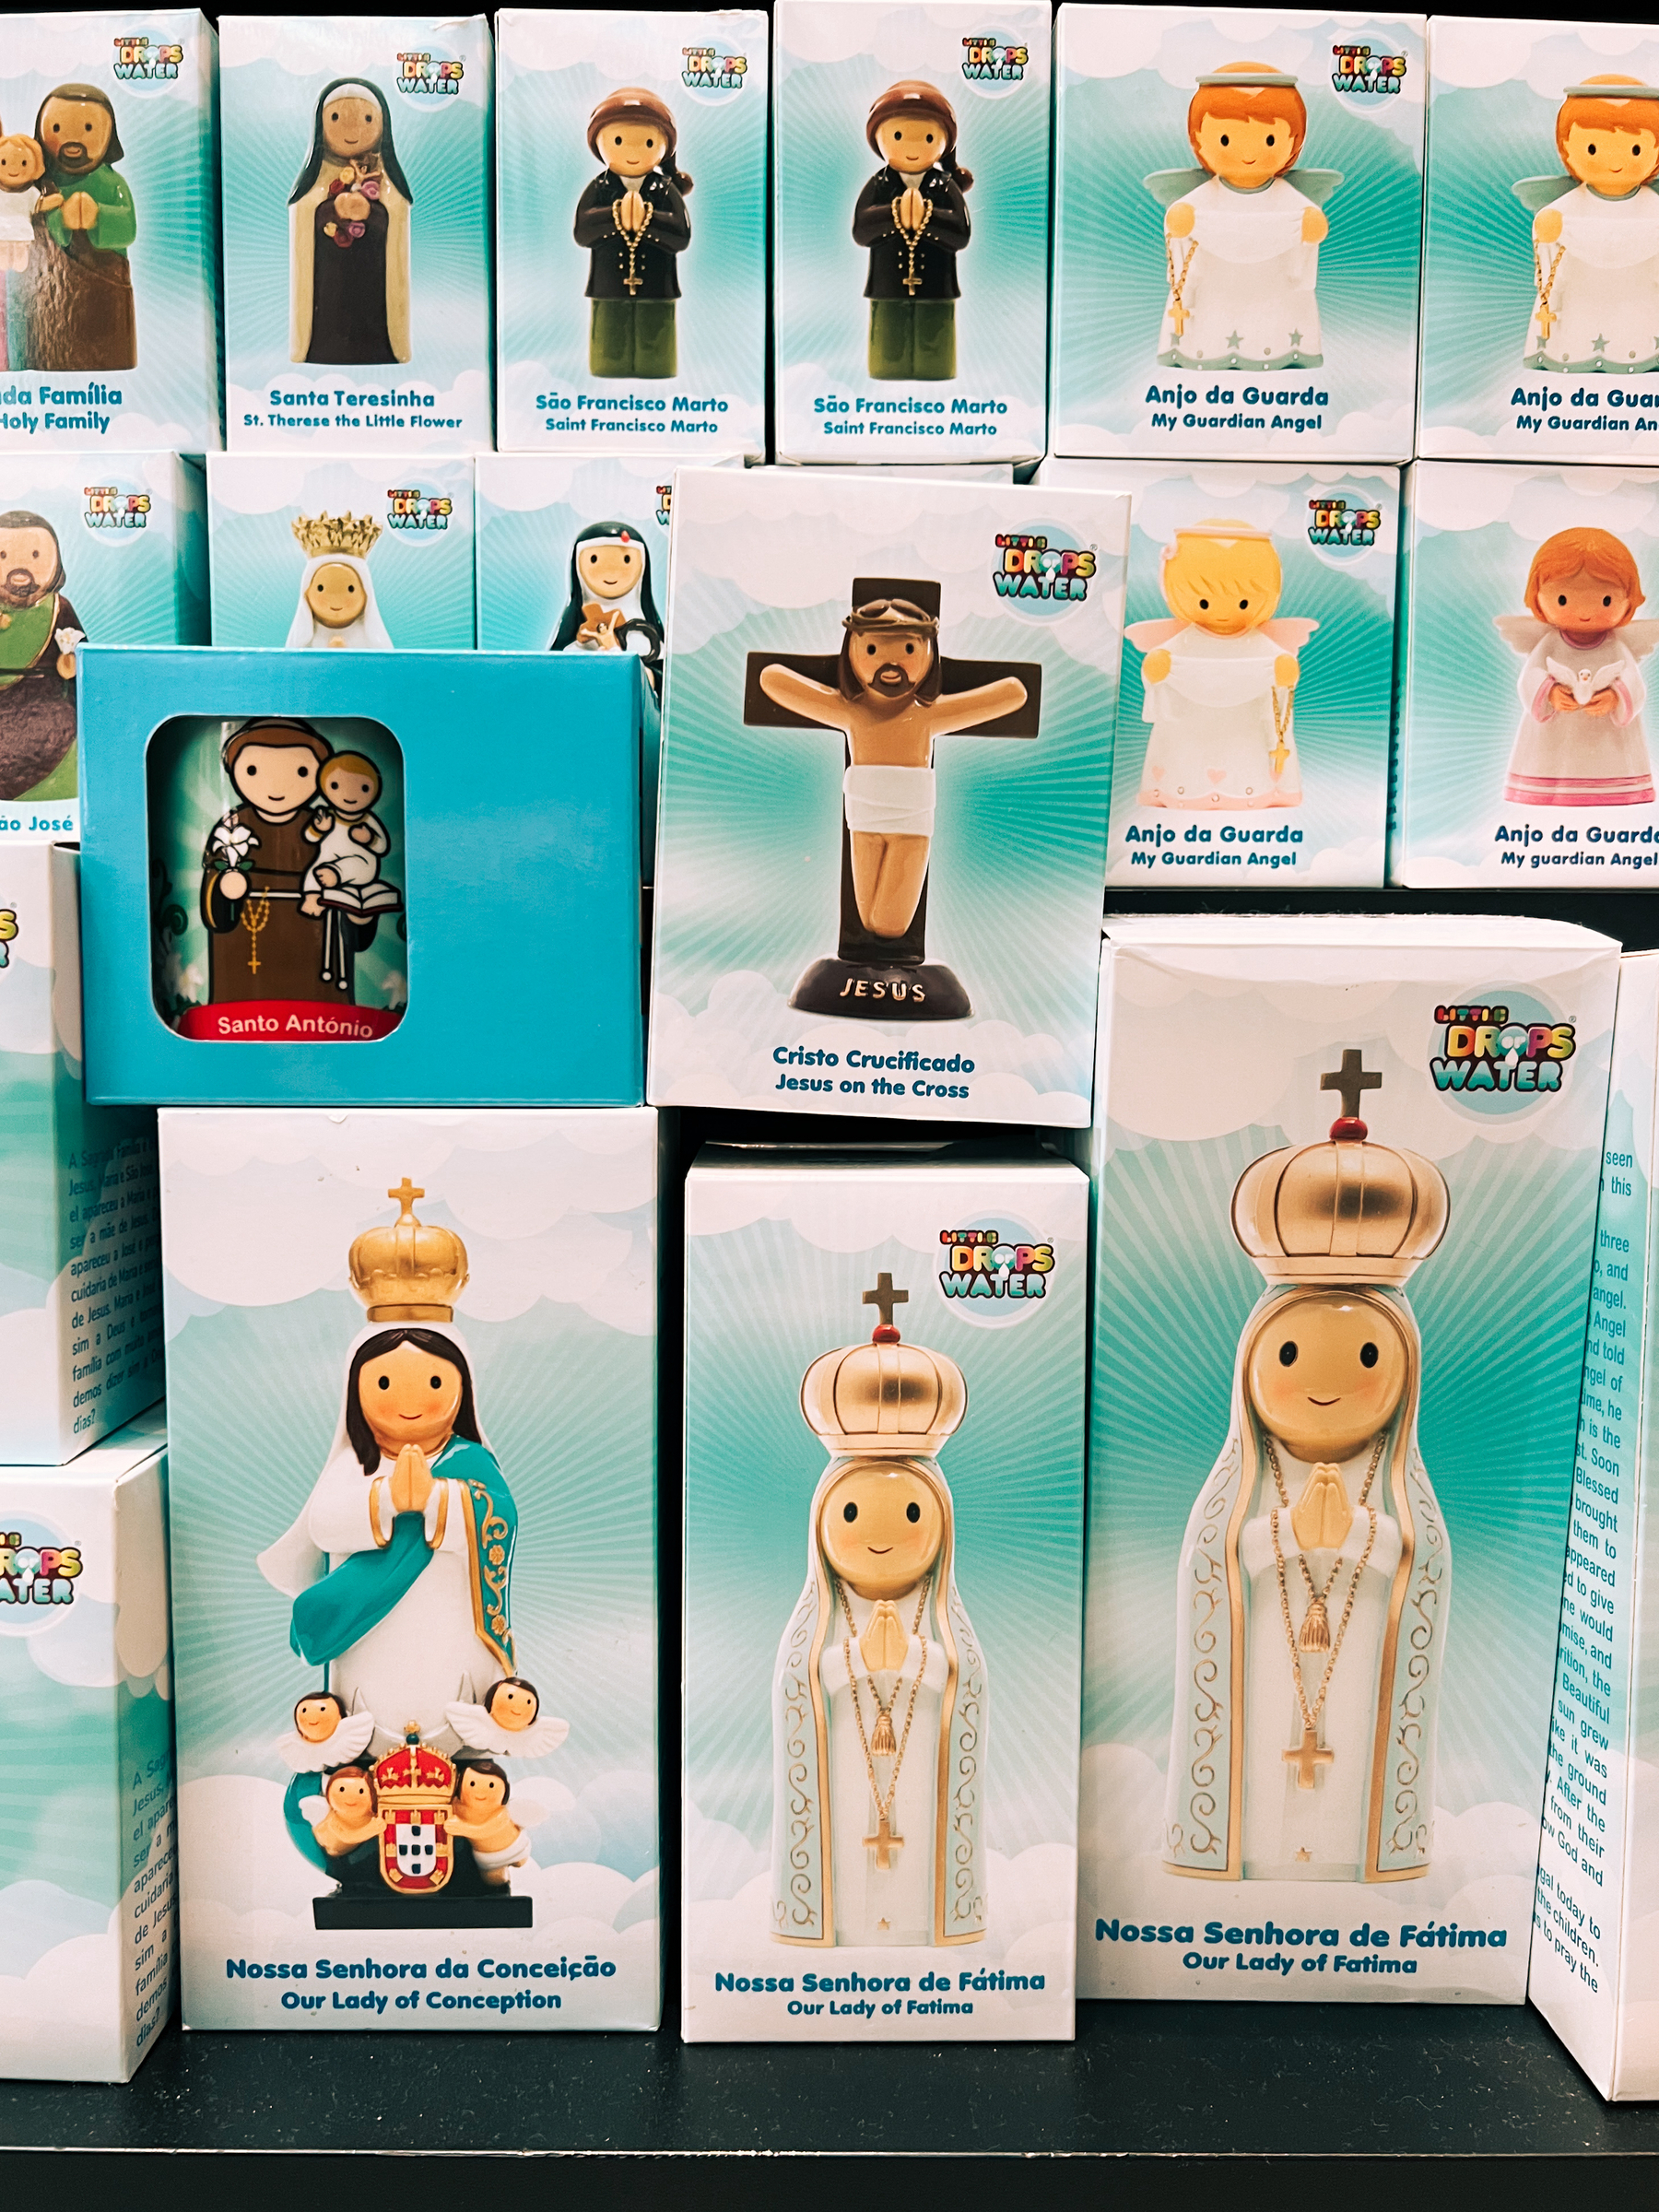 Toy religious figurines. 